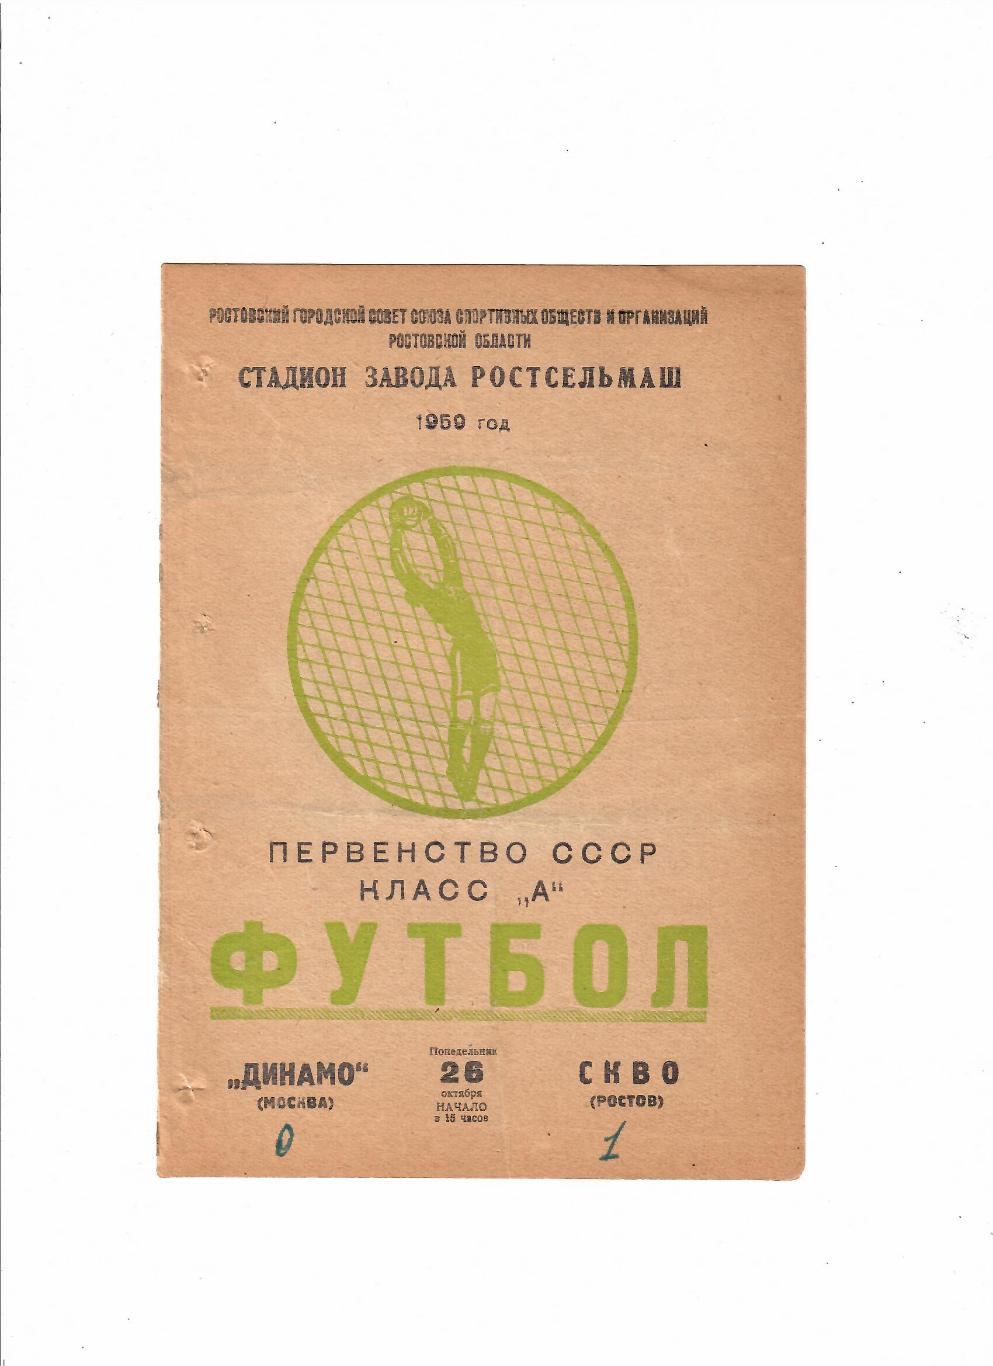 СКВО(СКА) Ростов-Динамо Москва 1959